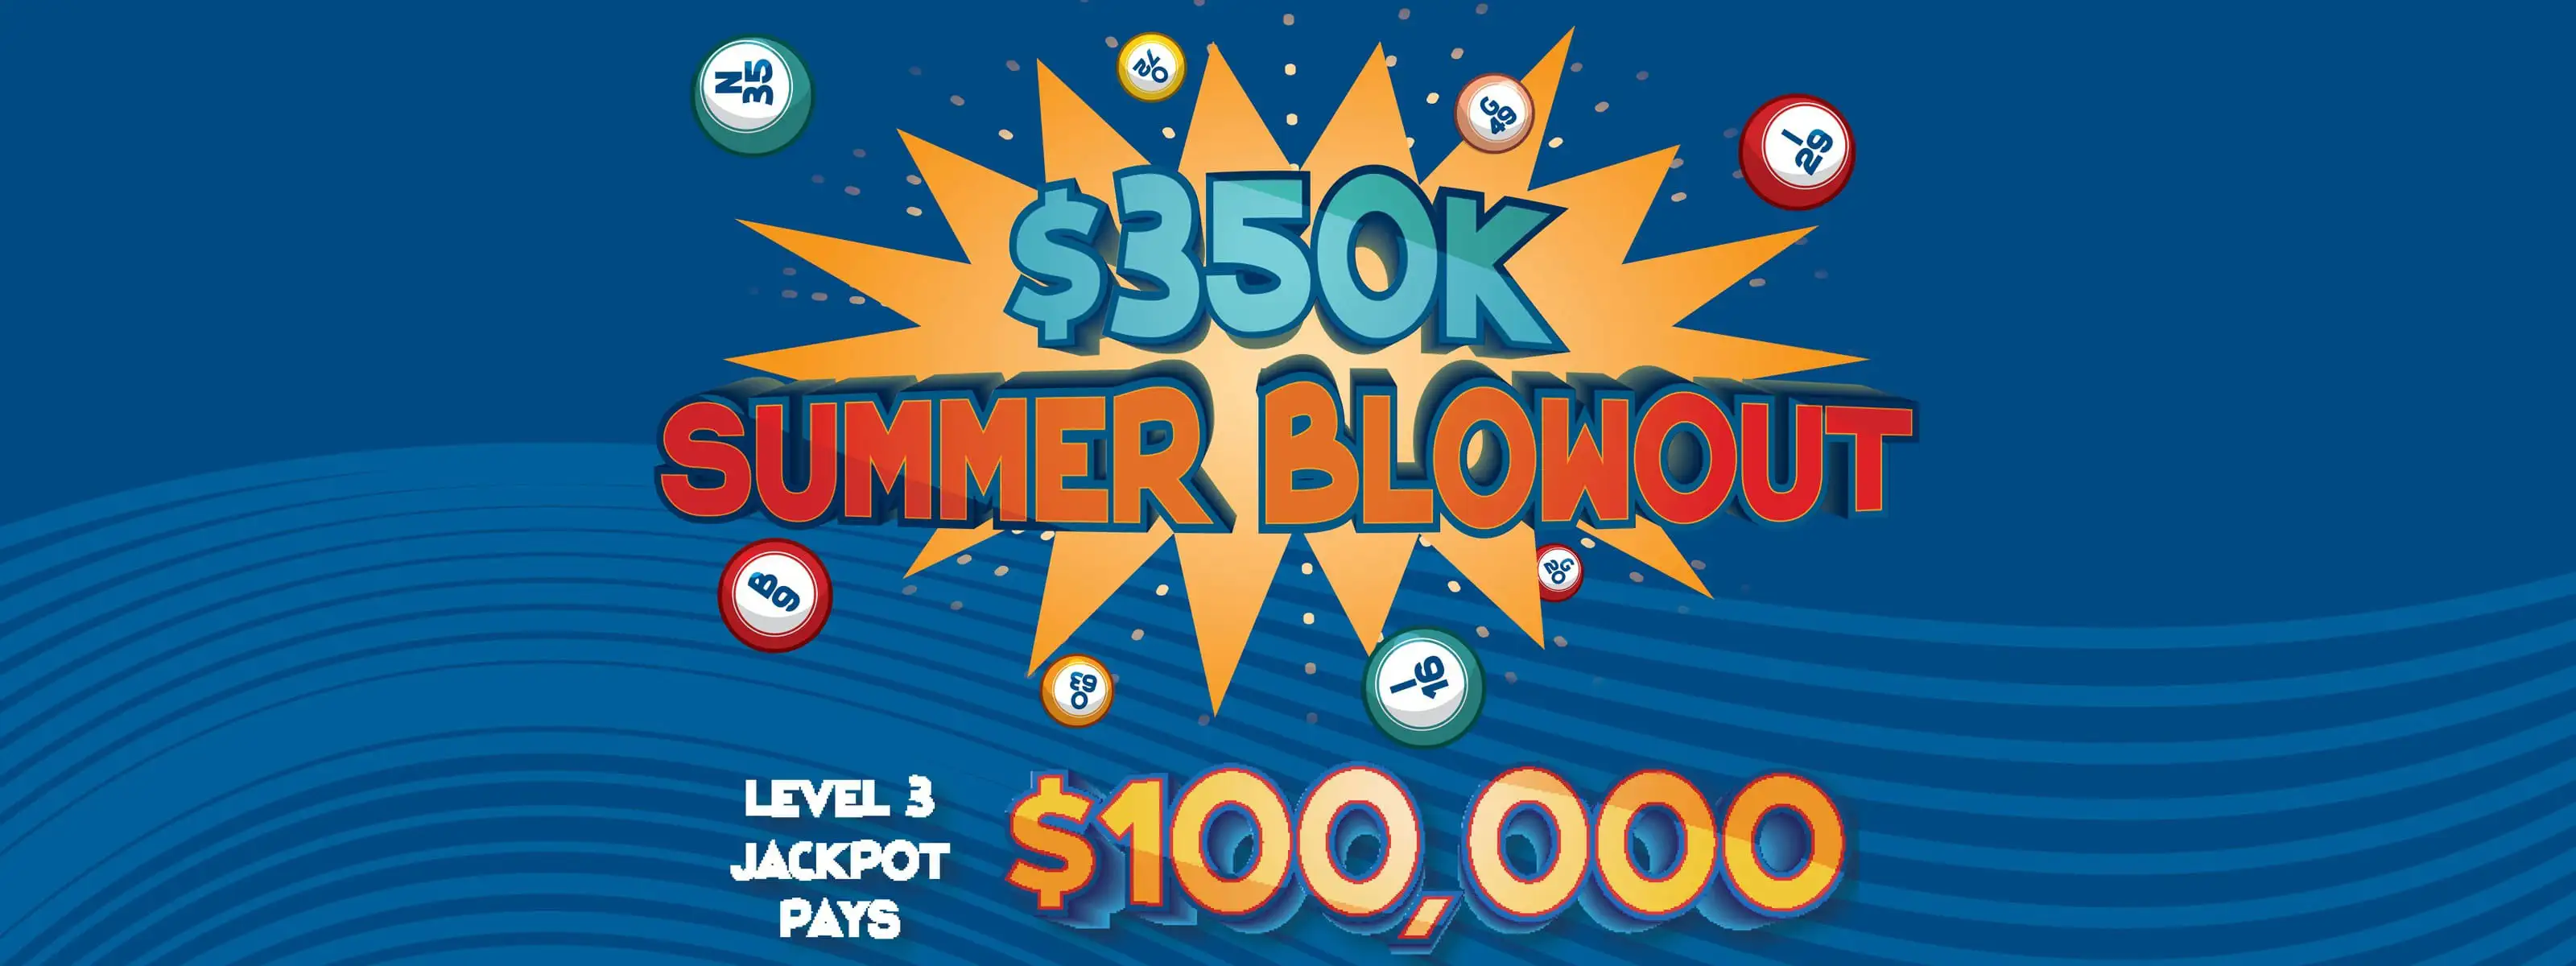 $350 summer blowout Bingo